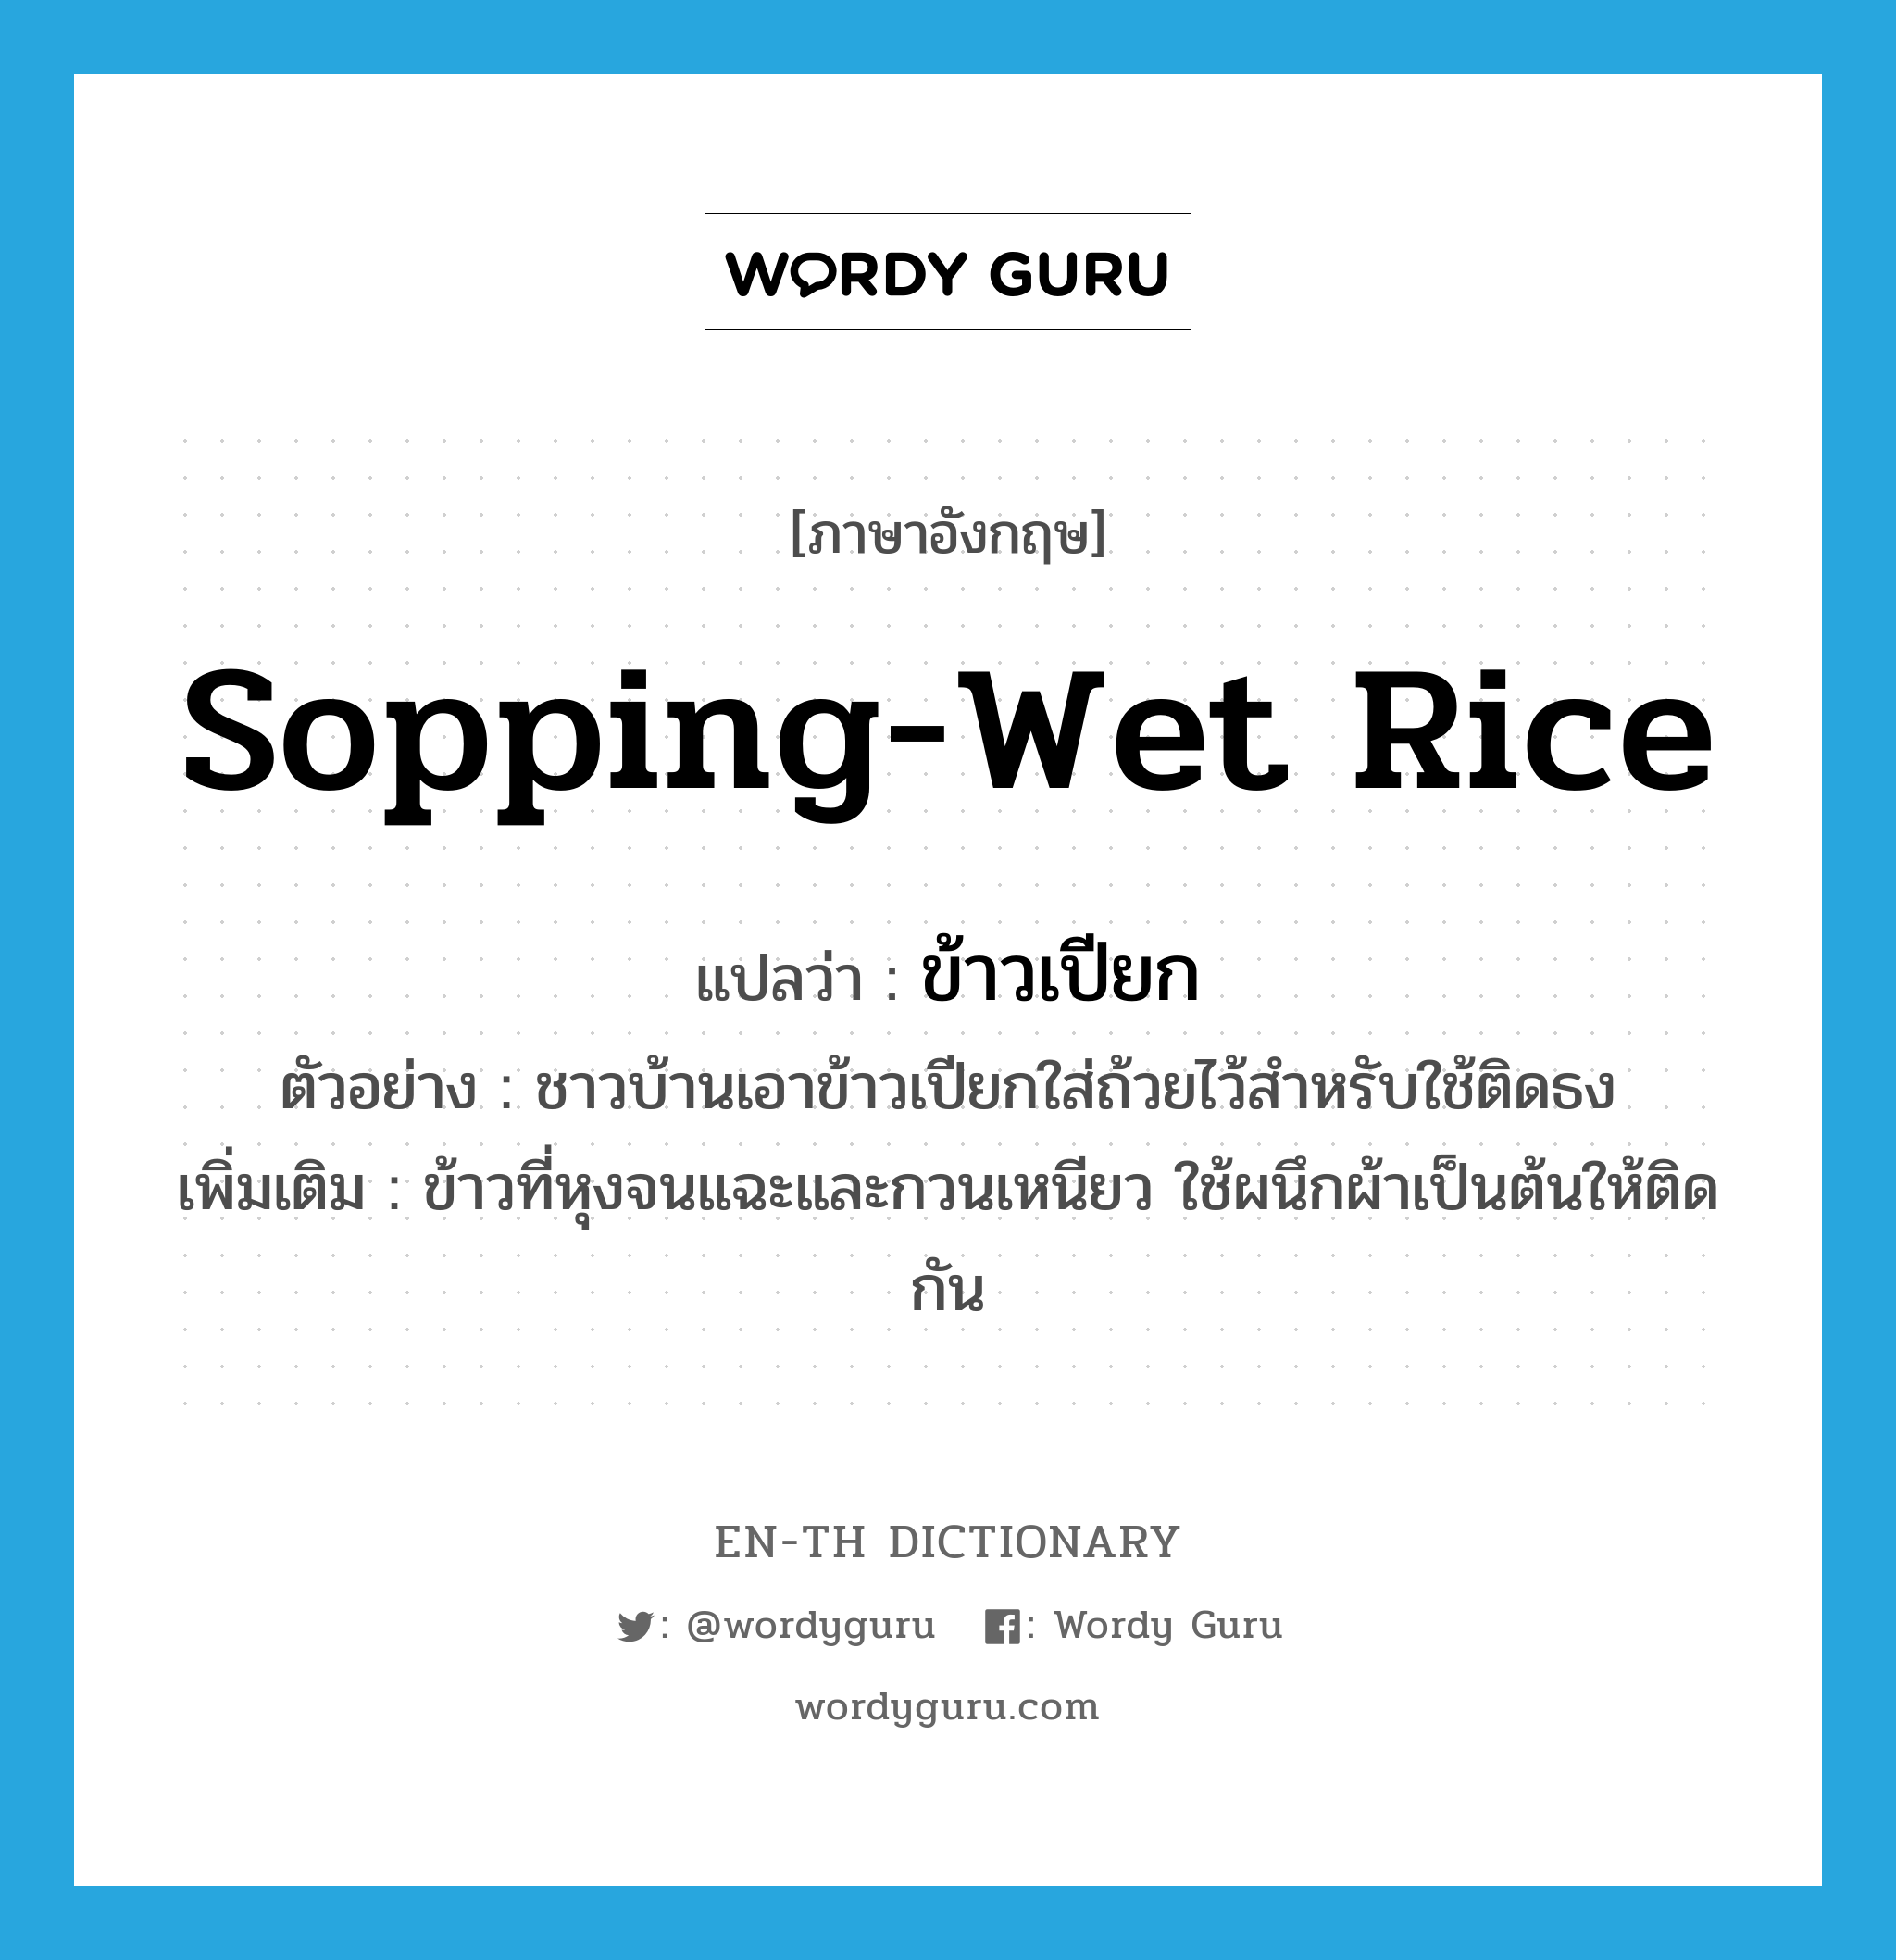 sopping-wet rice แปลว่า?, คำศัพท์ภาษาอังกฤษ sopping-wet rice แปลว่า ข้าวเปียก ประเภท N ตัวอย่าง ชาวบ้านเอาข้าวเปียกใส่ถ้วยไว้สำหรับใช้ติดธง เพิ่มเติม ข้าวที่หุงจนแฉะและกวนเหนียว ใช้ผนึกผ้าเป็นต้นให้ติดกัน หมวด N